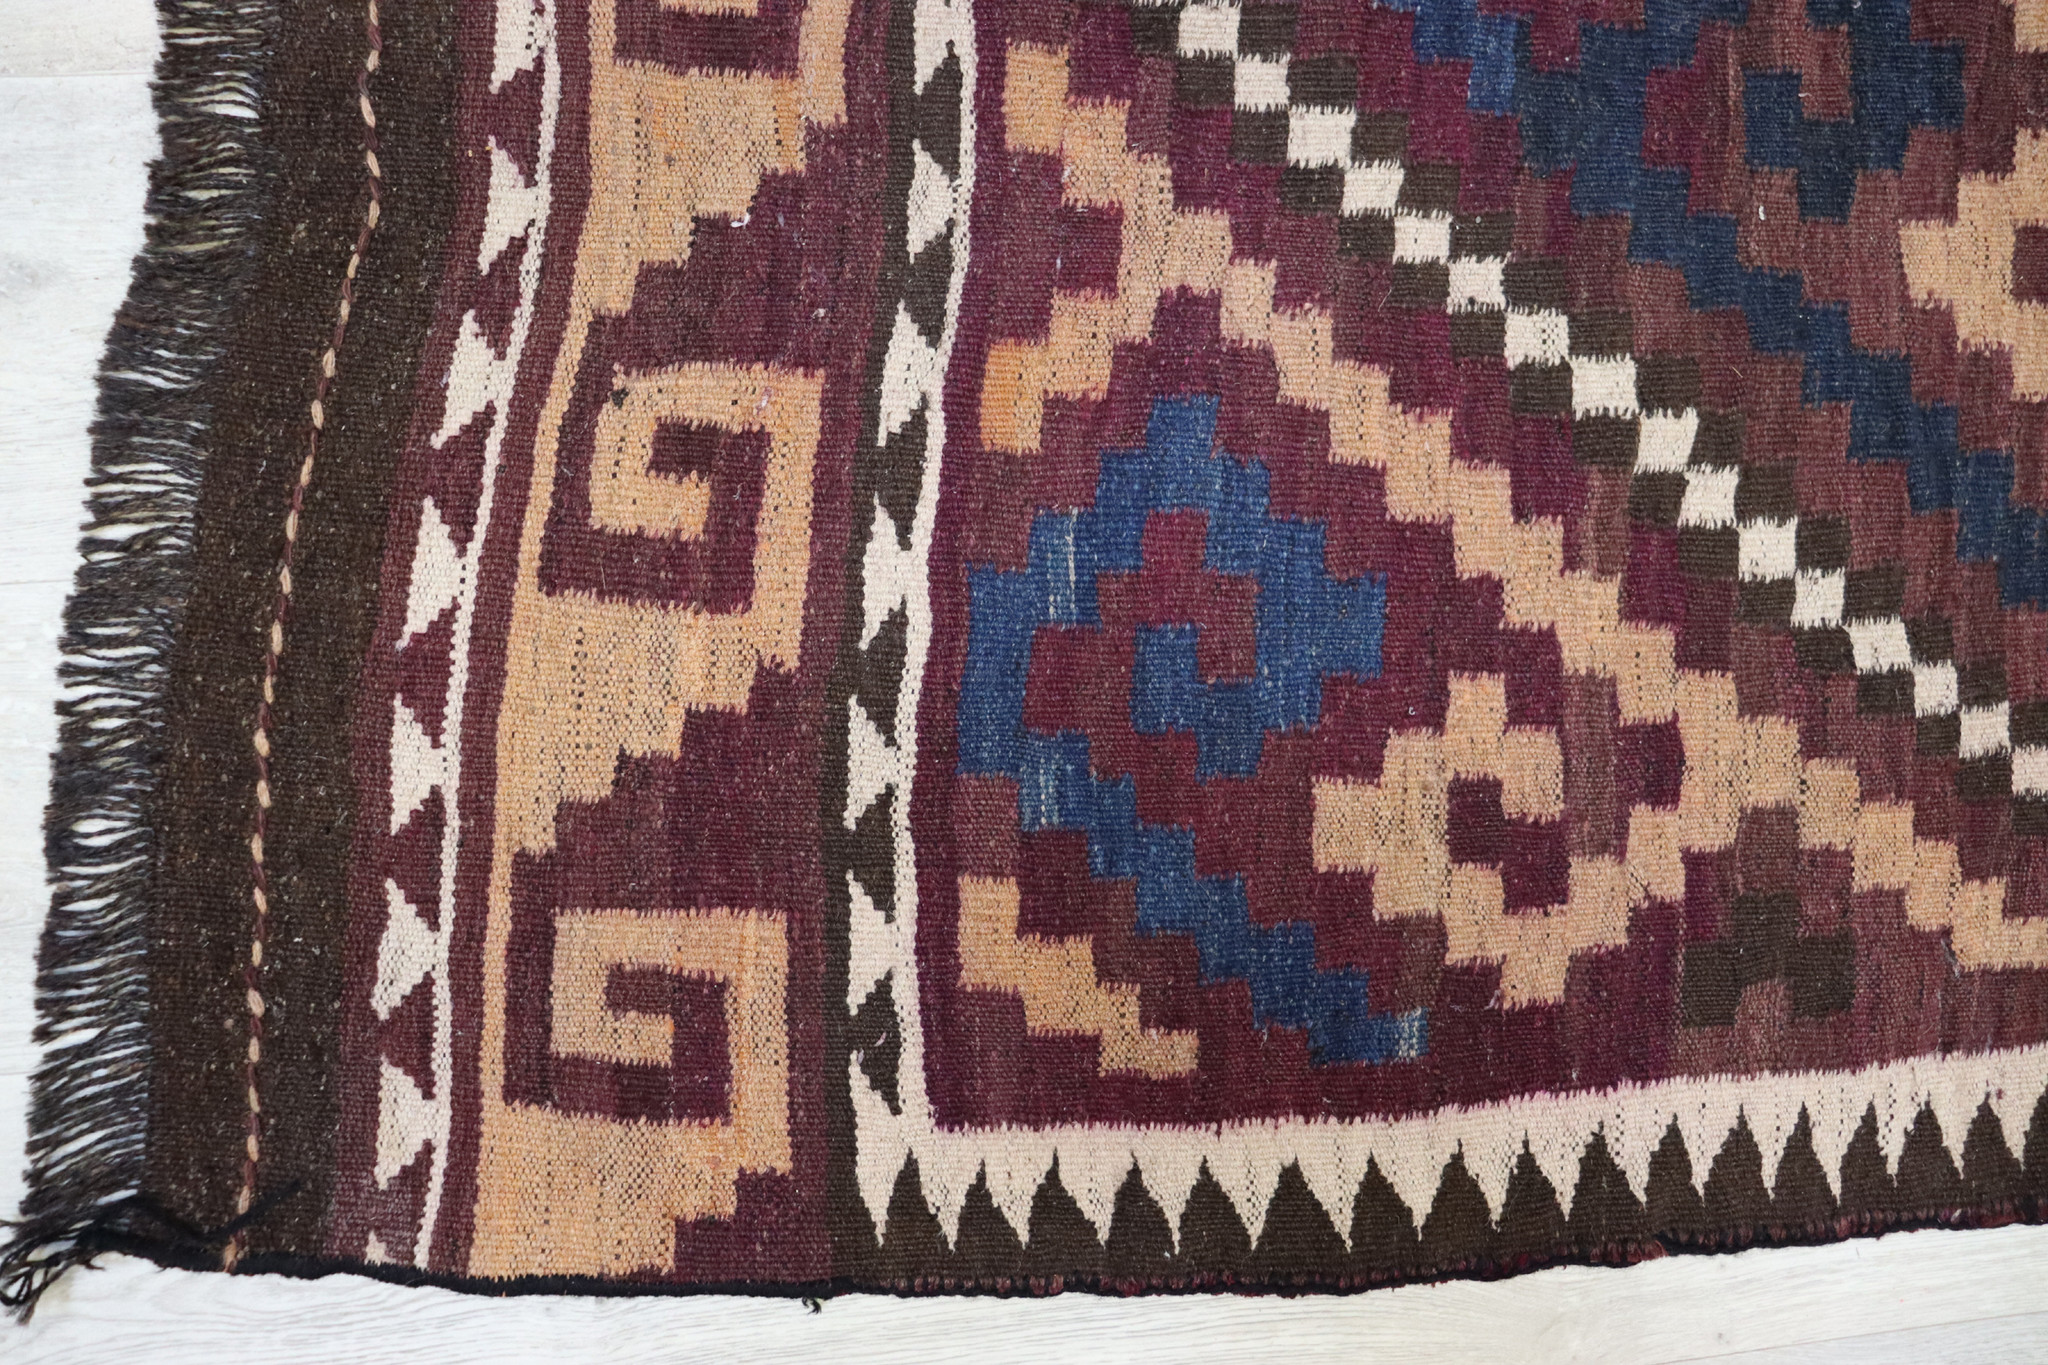 330x110    cm Afghan natural colors nomadic Kilim rug  No:  - 280